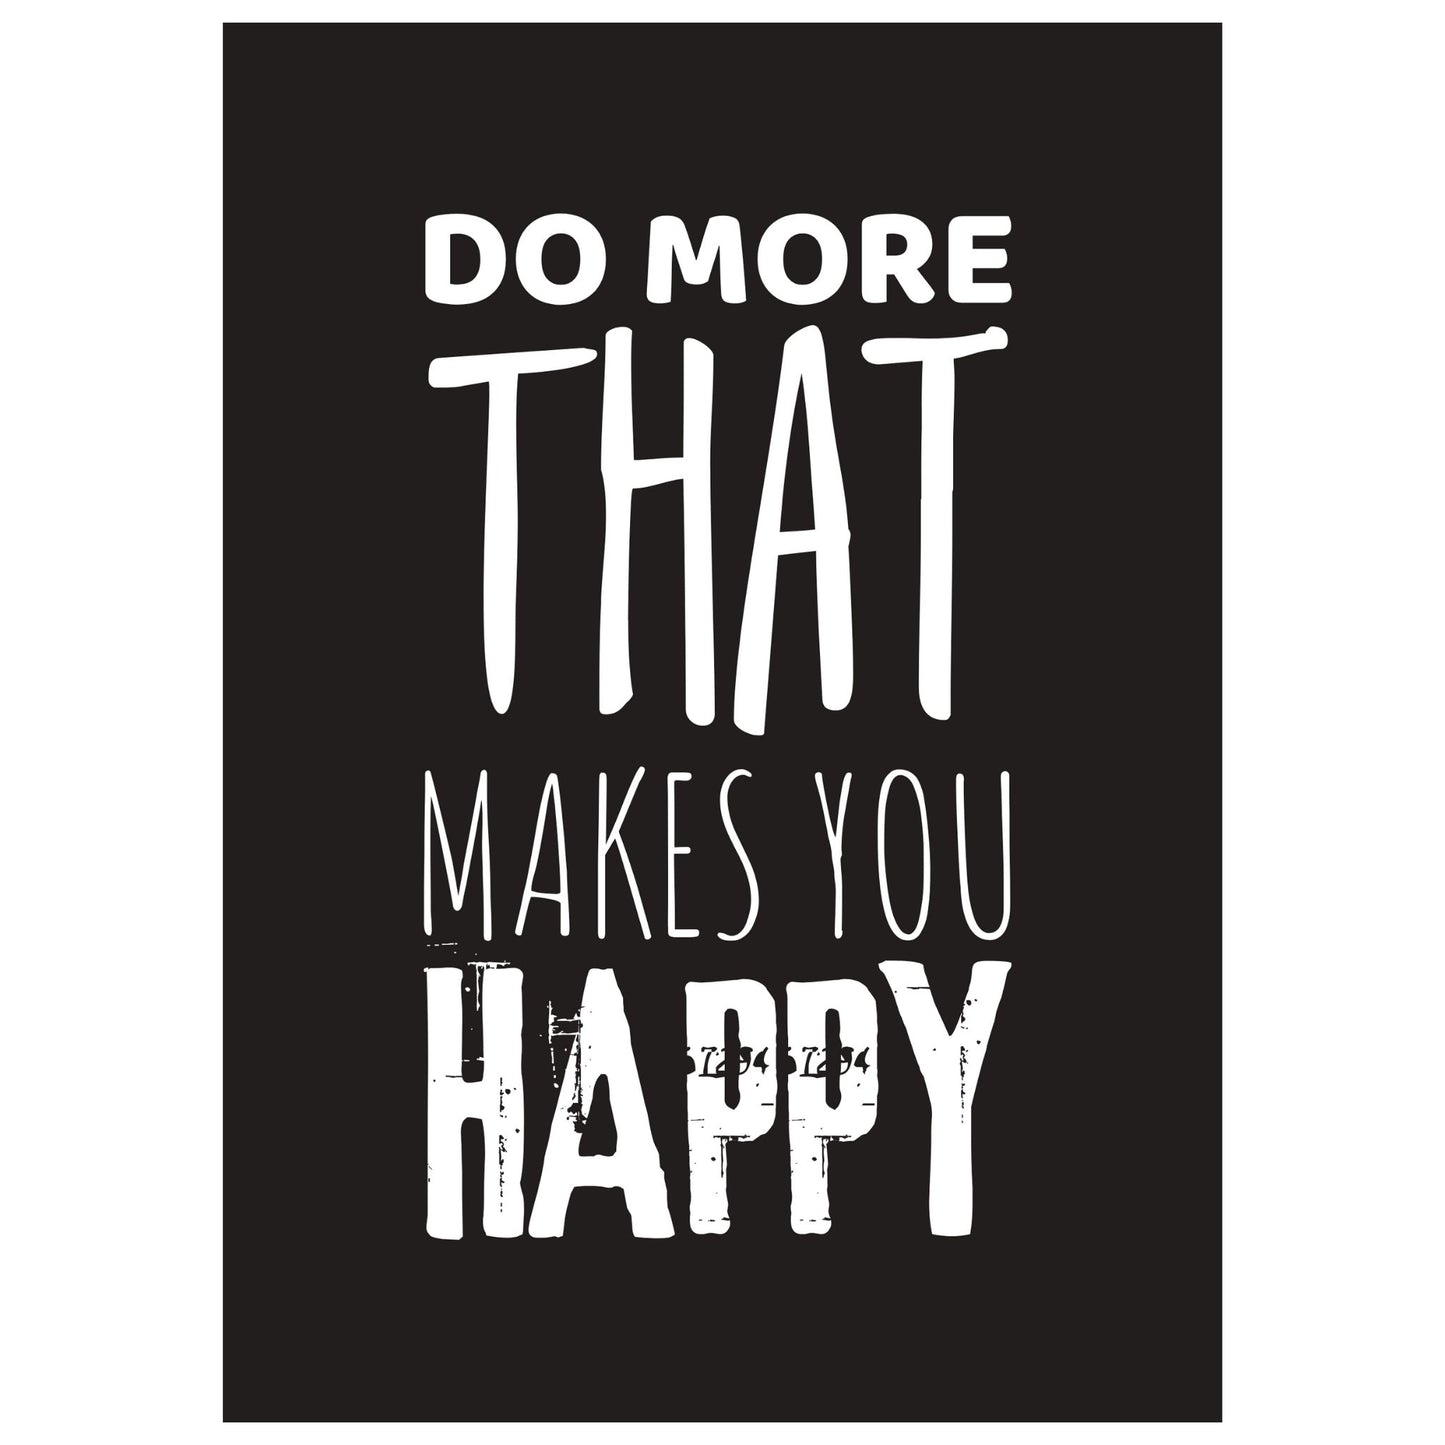 "Do more that makes you happy" tekstplakat. Hvit skrift på sort bakgrunn. 